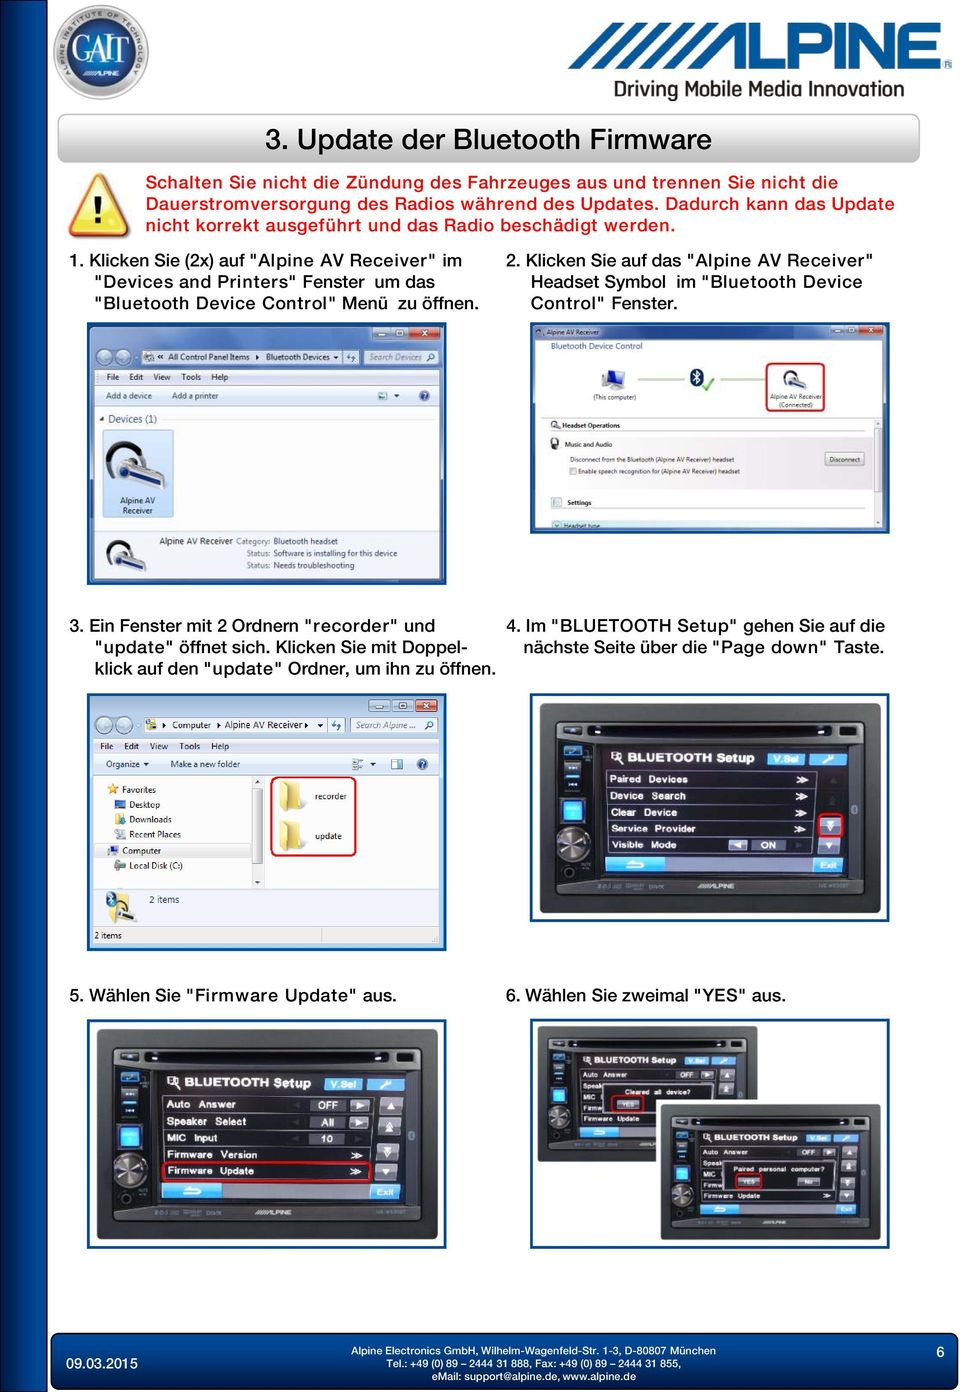 Klicken Sie (2x) auf "Alpine AV Receiver" im "Devices and Printers" Fenster um das "Bluetooth Device Control" Menü zu öffnen. 2.